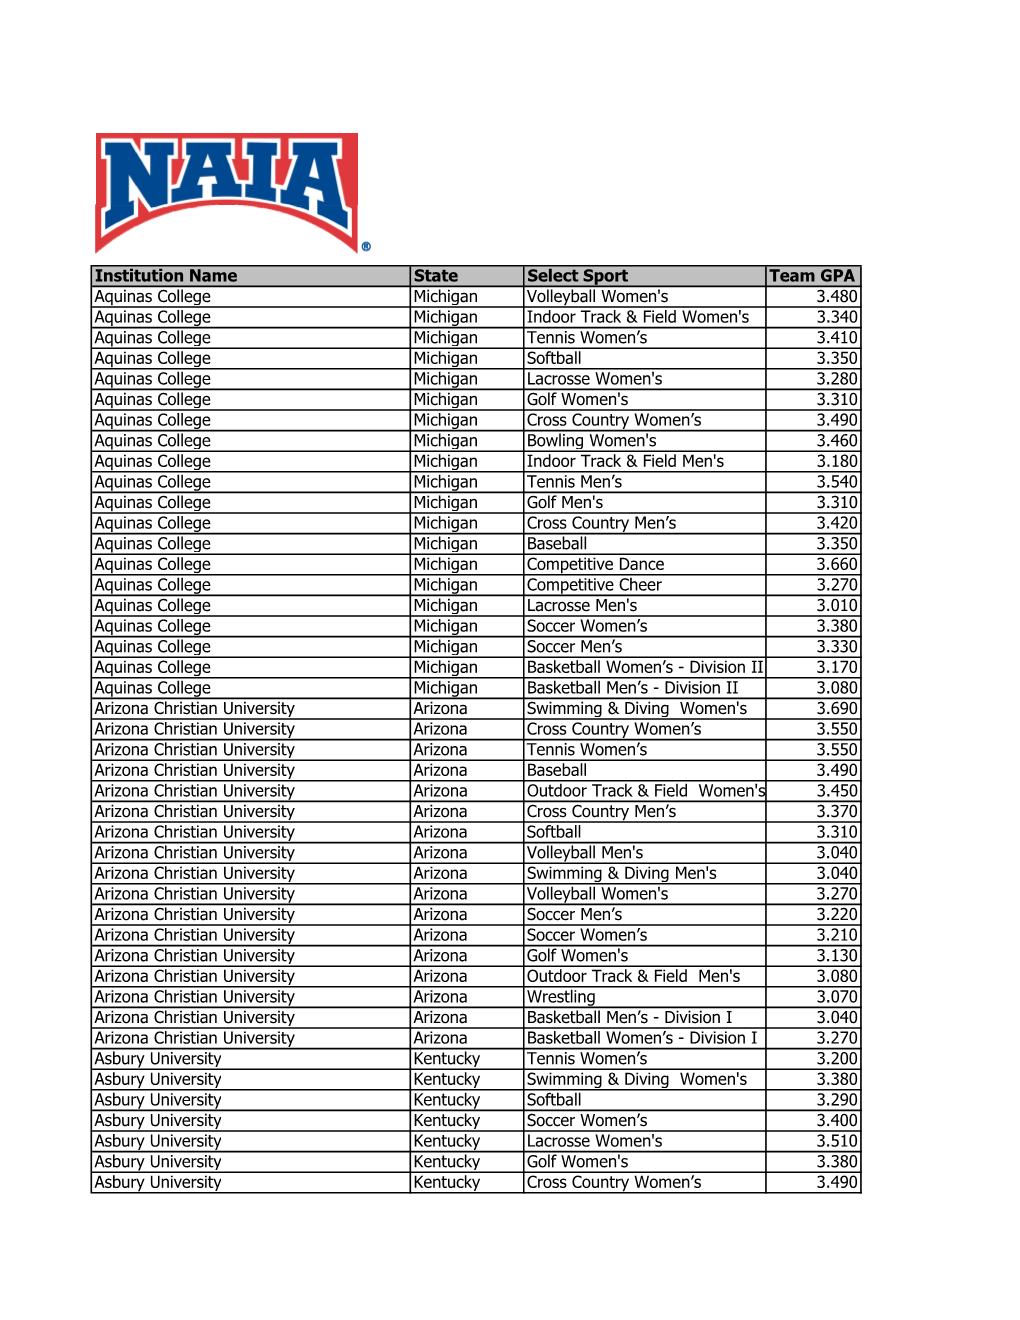 2019-20 NAIA Scholar Teams